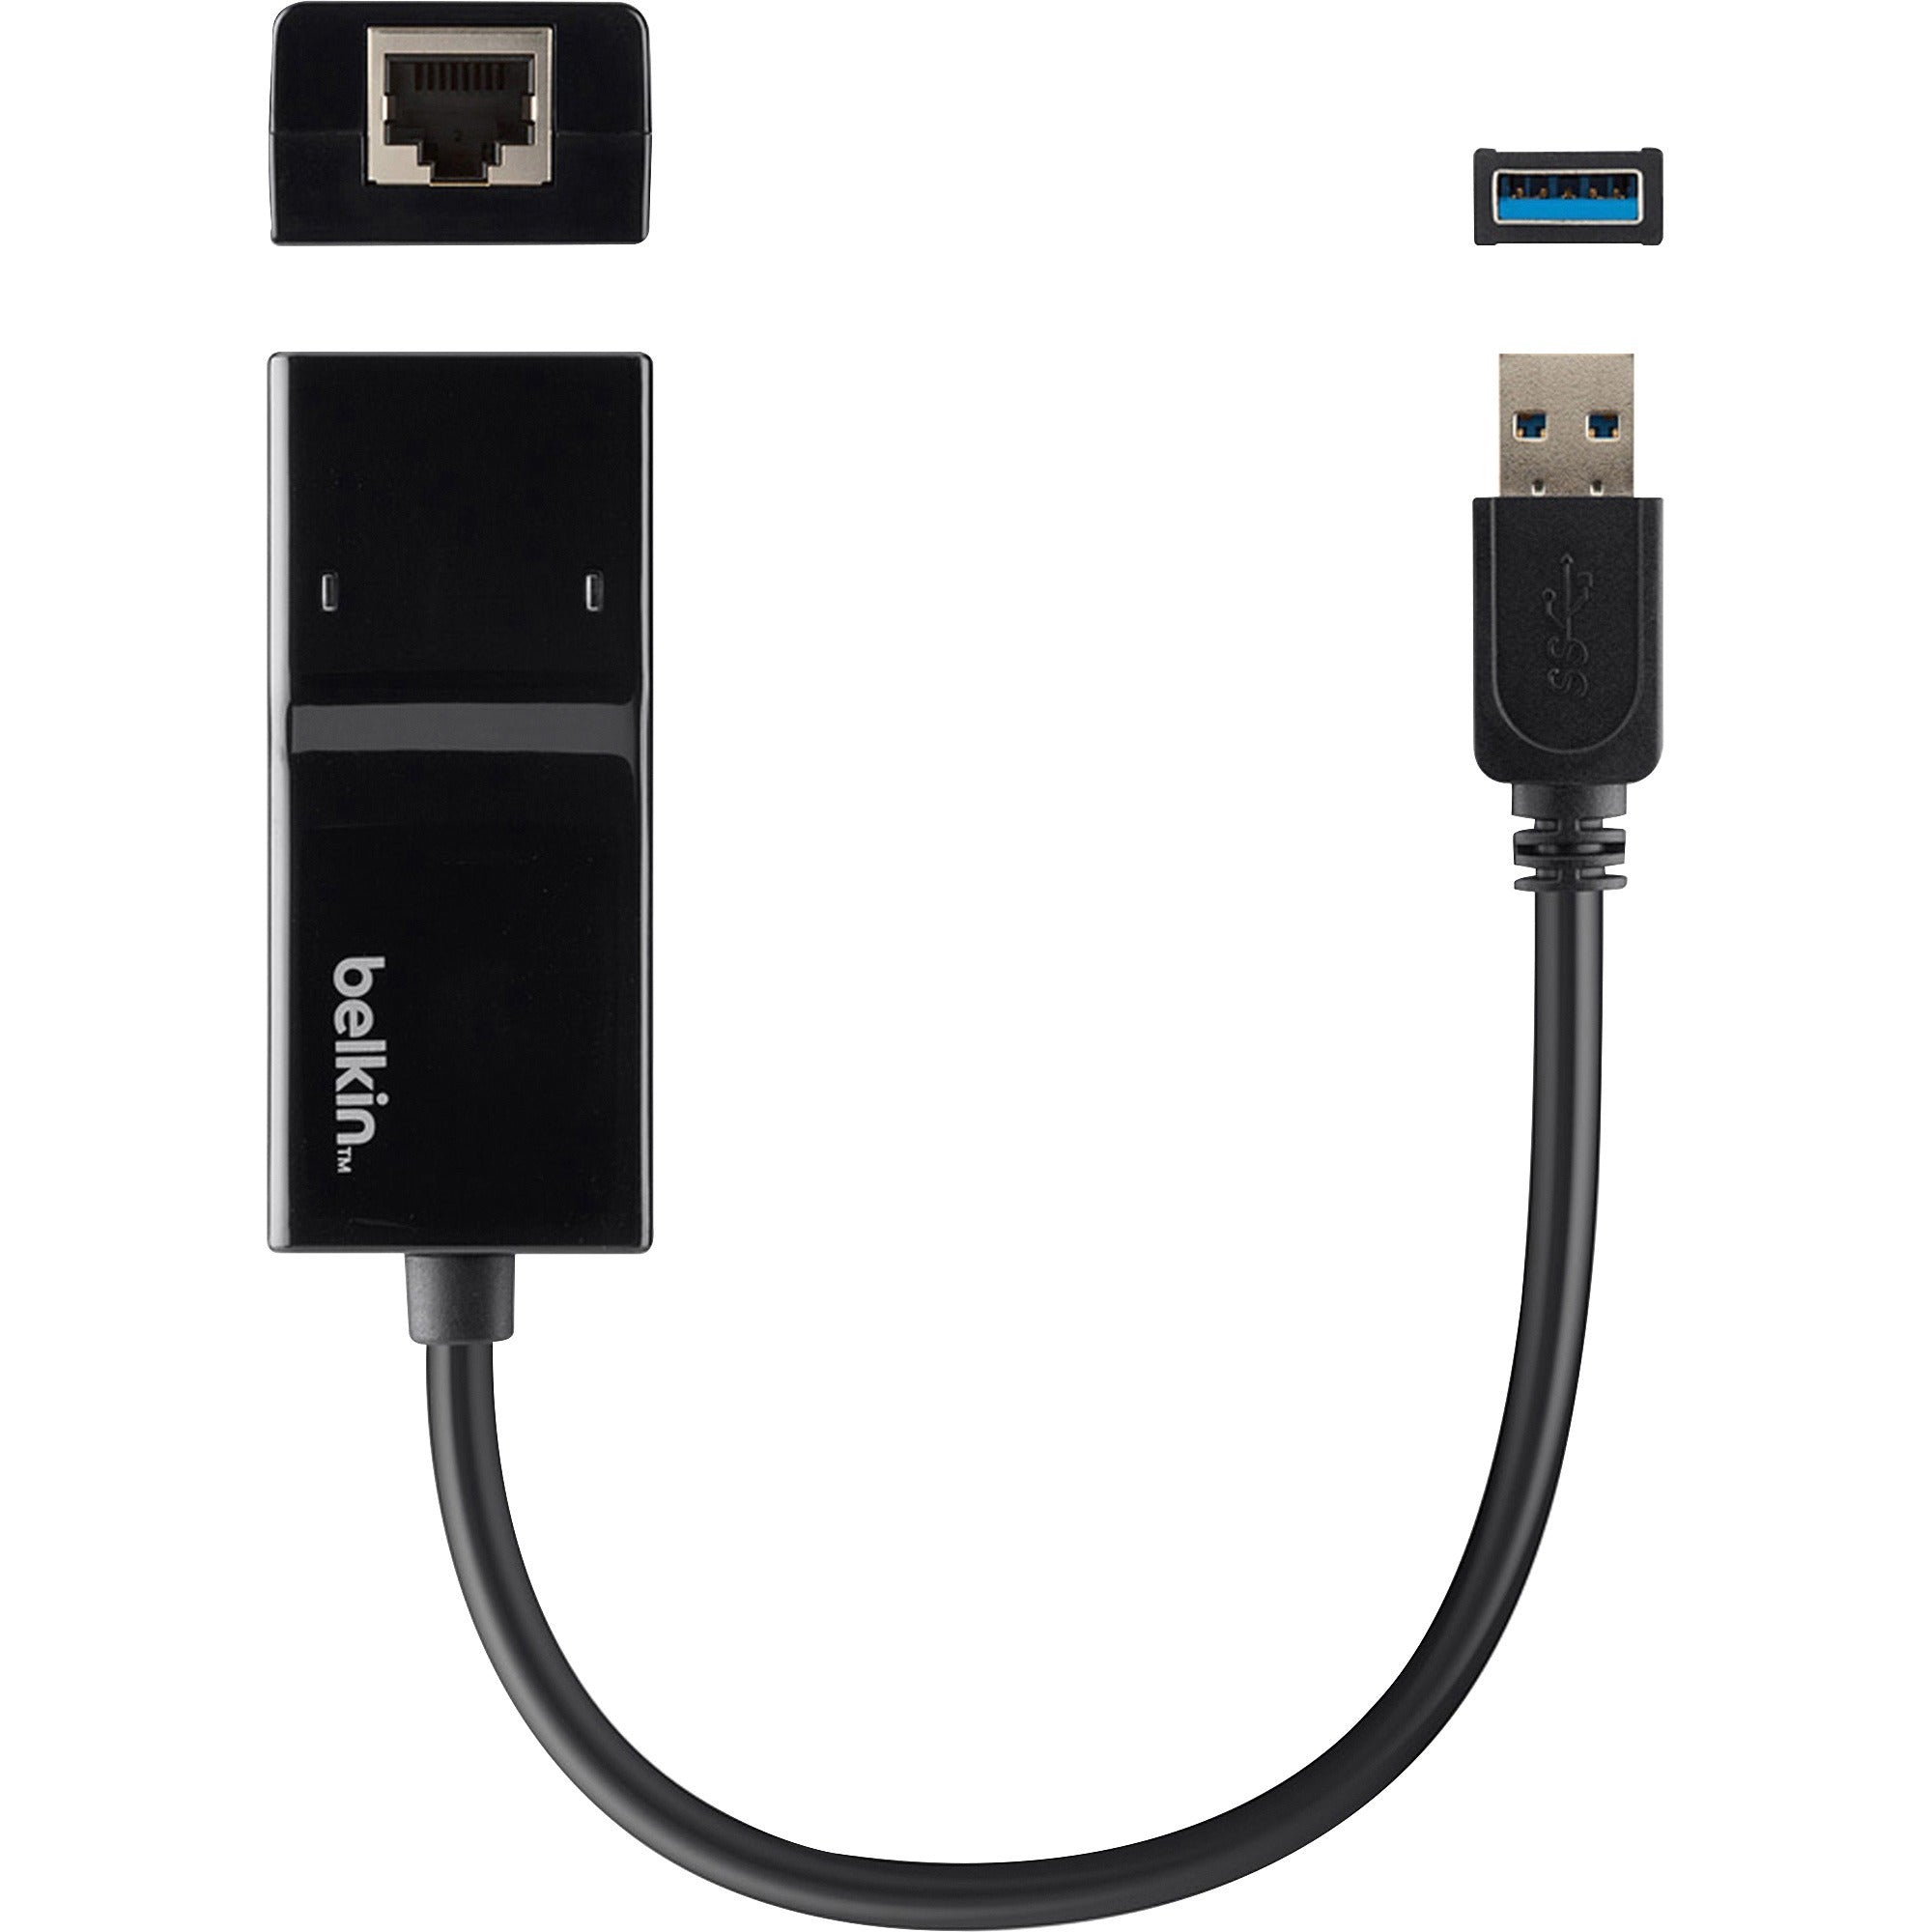 Belkin USB 3.0 to Gigabit Ethernet GbE Network Adapter 10/100/1000 - B2B048